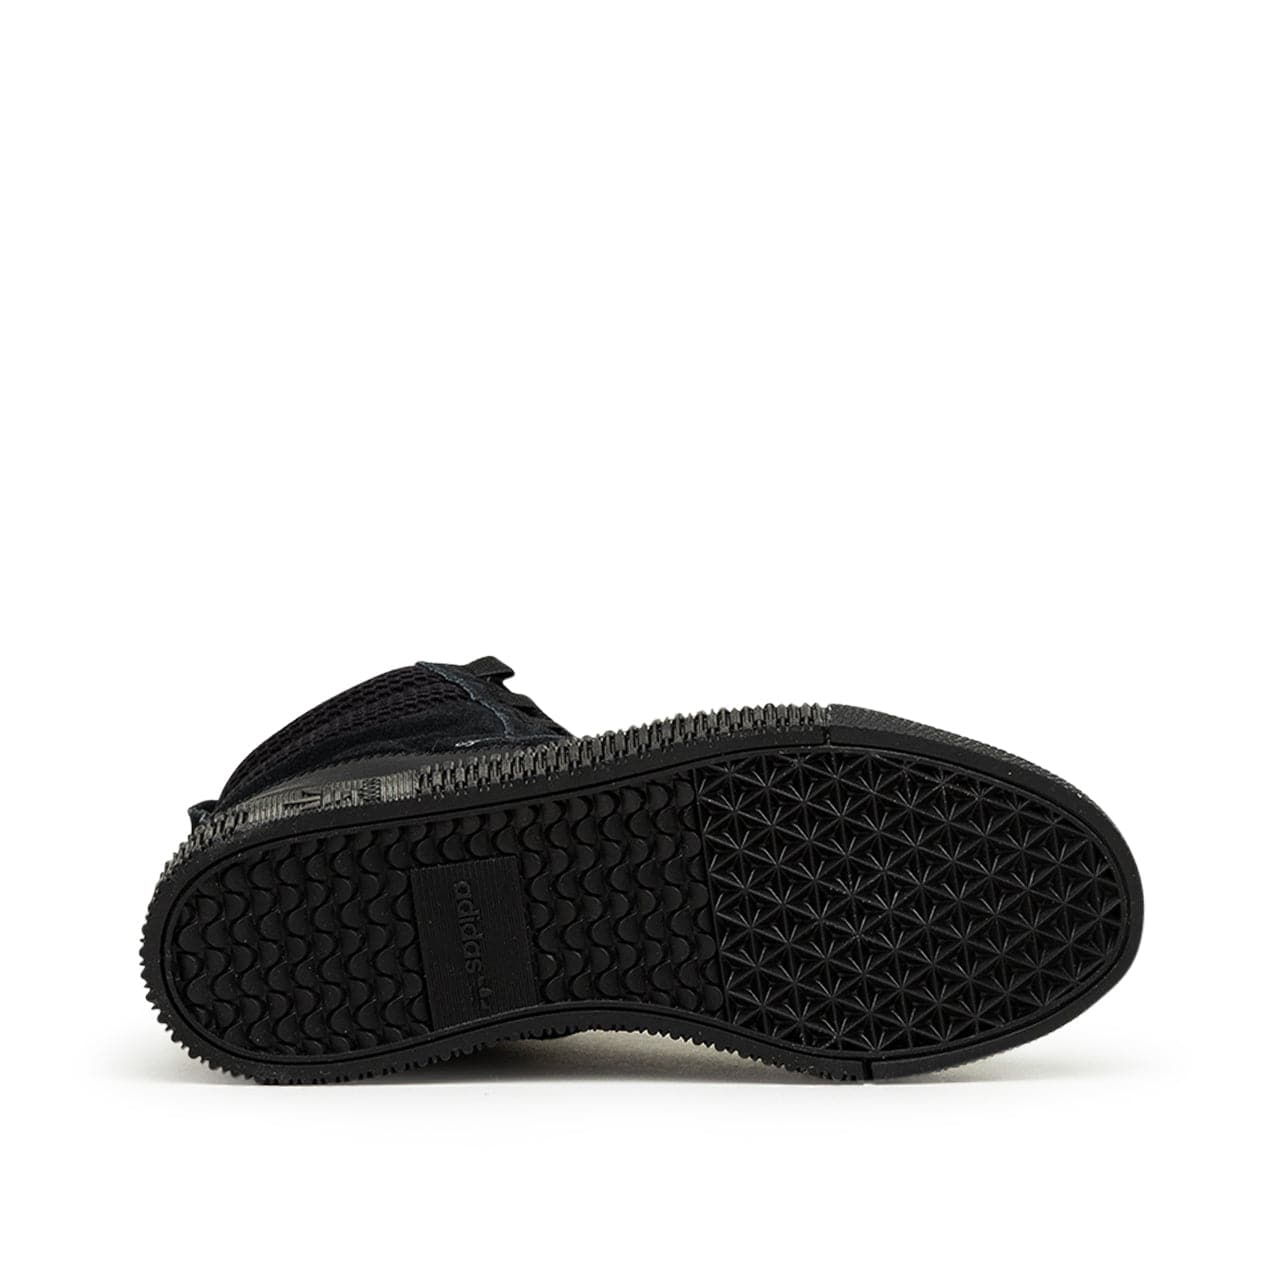 Adidas Samba Boots (Schwarz)  - Allike Store